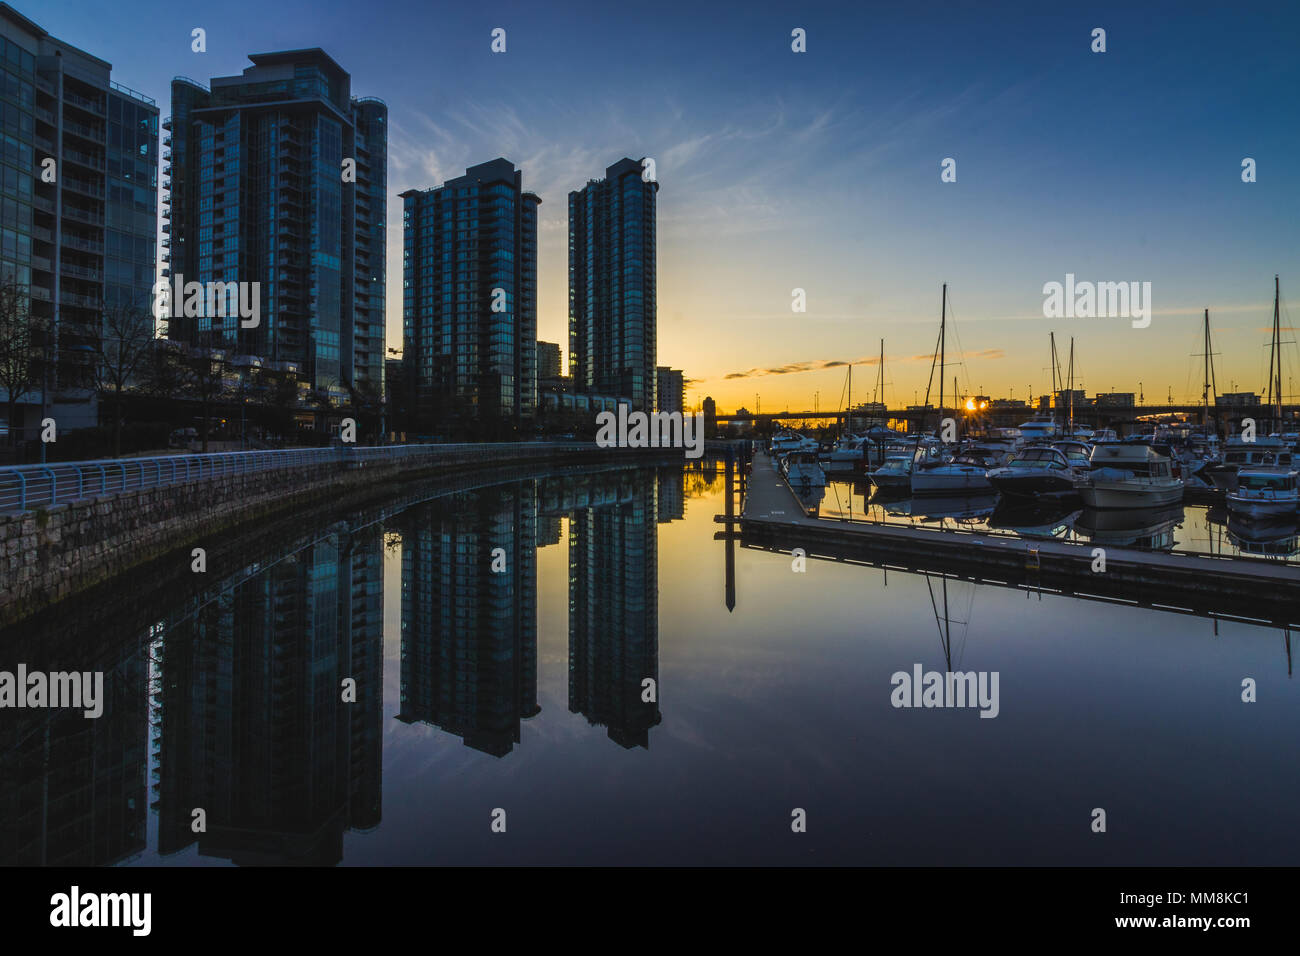 Schöne Stadtbild von Kai Marina bei Sonnenaufgang mit Reflexionen von Gebäuden und Boote im ruhigen Wasser, Vancouver, British Columbia genommen Stockfoto